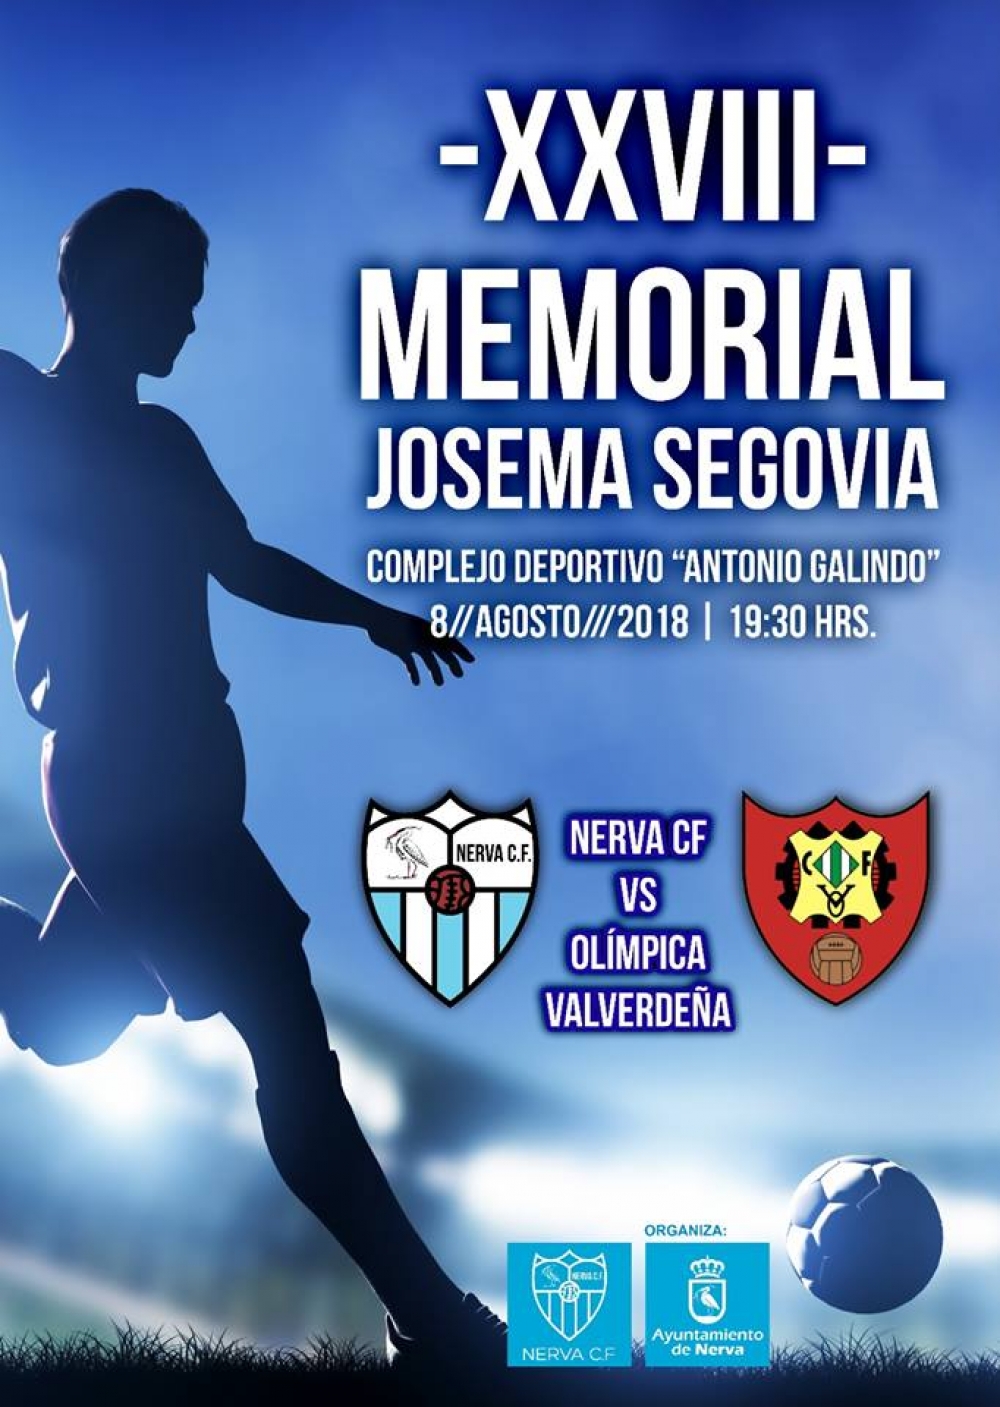 XXVIII Memorial Josema Segovia